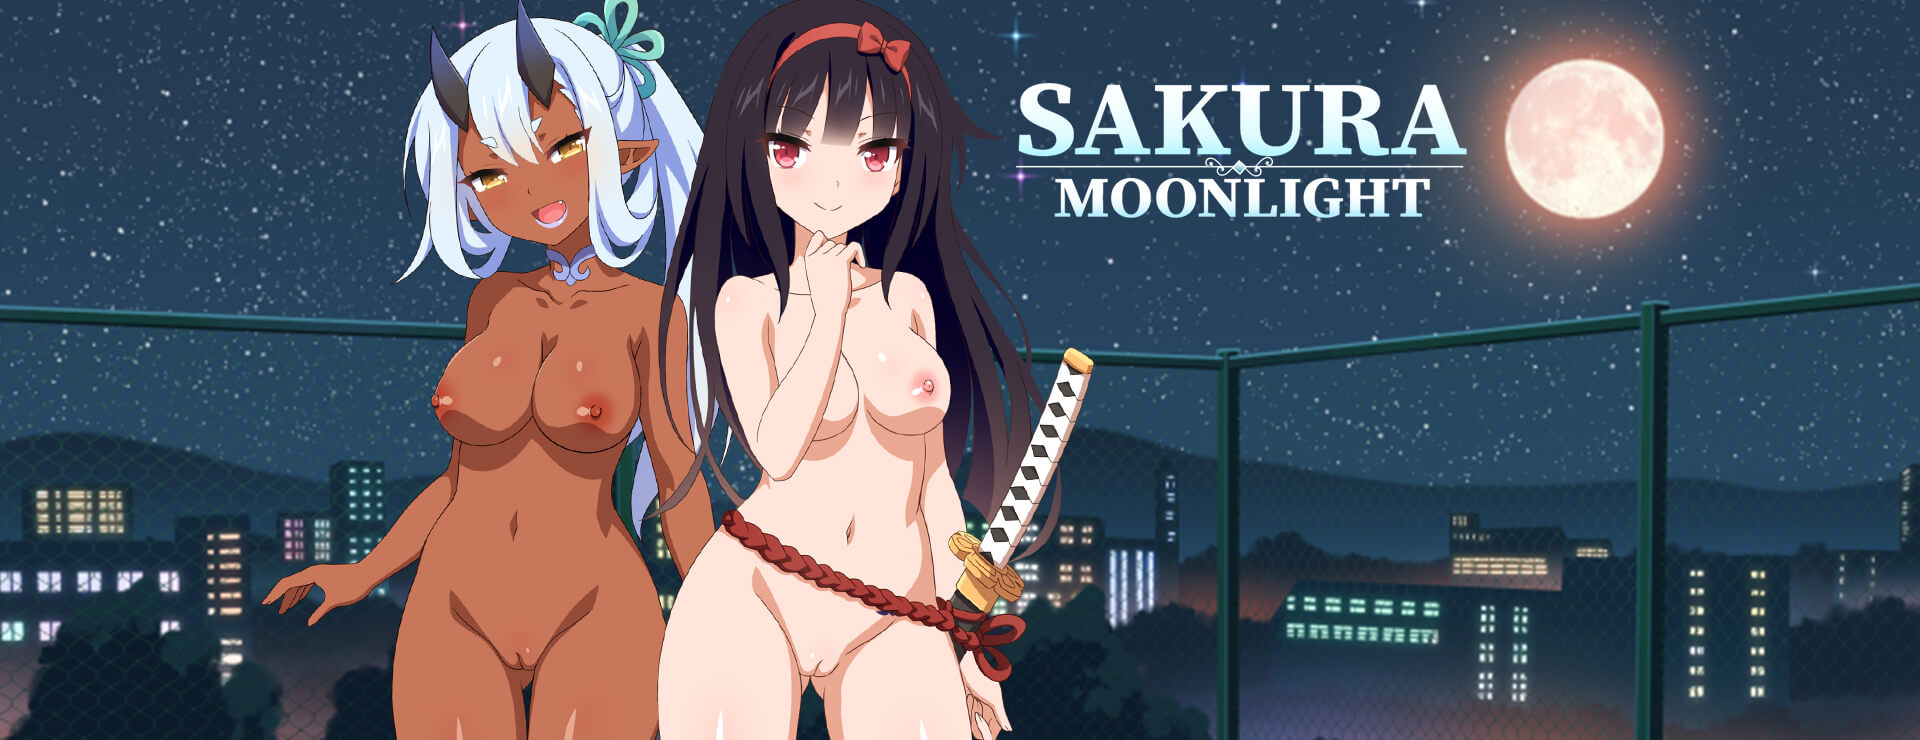 Sakura Moonlight - Powieść wizualna Gra